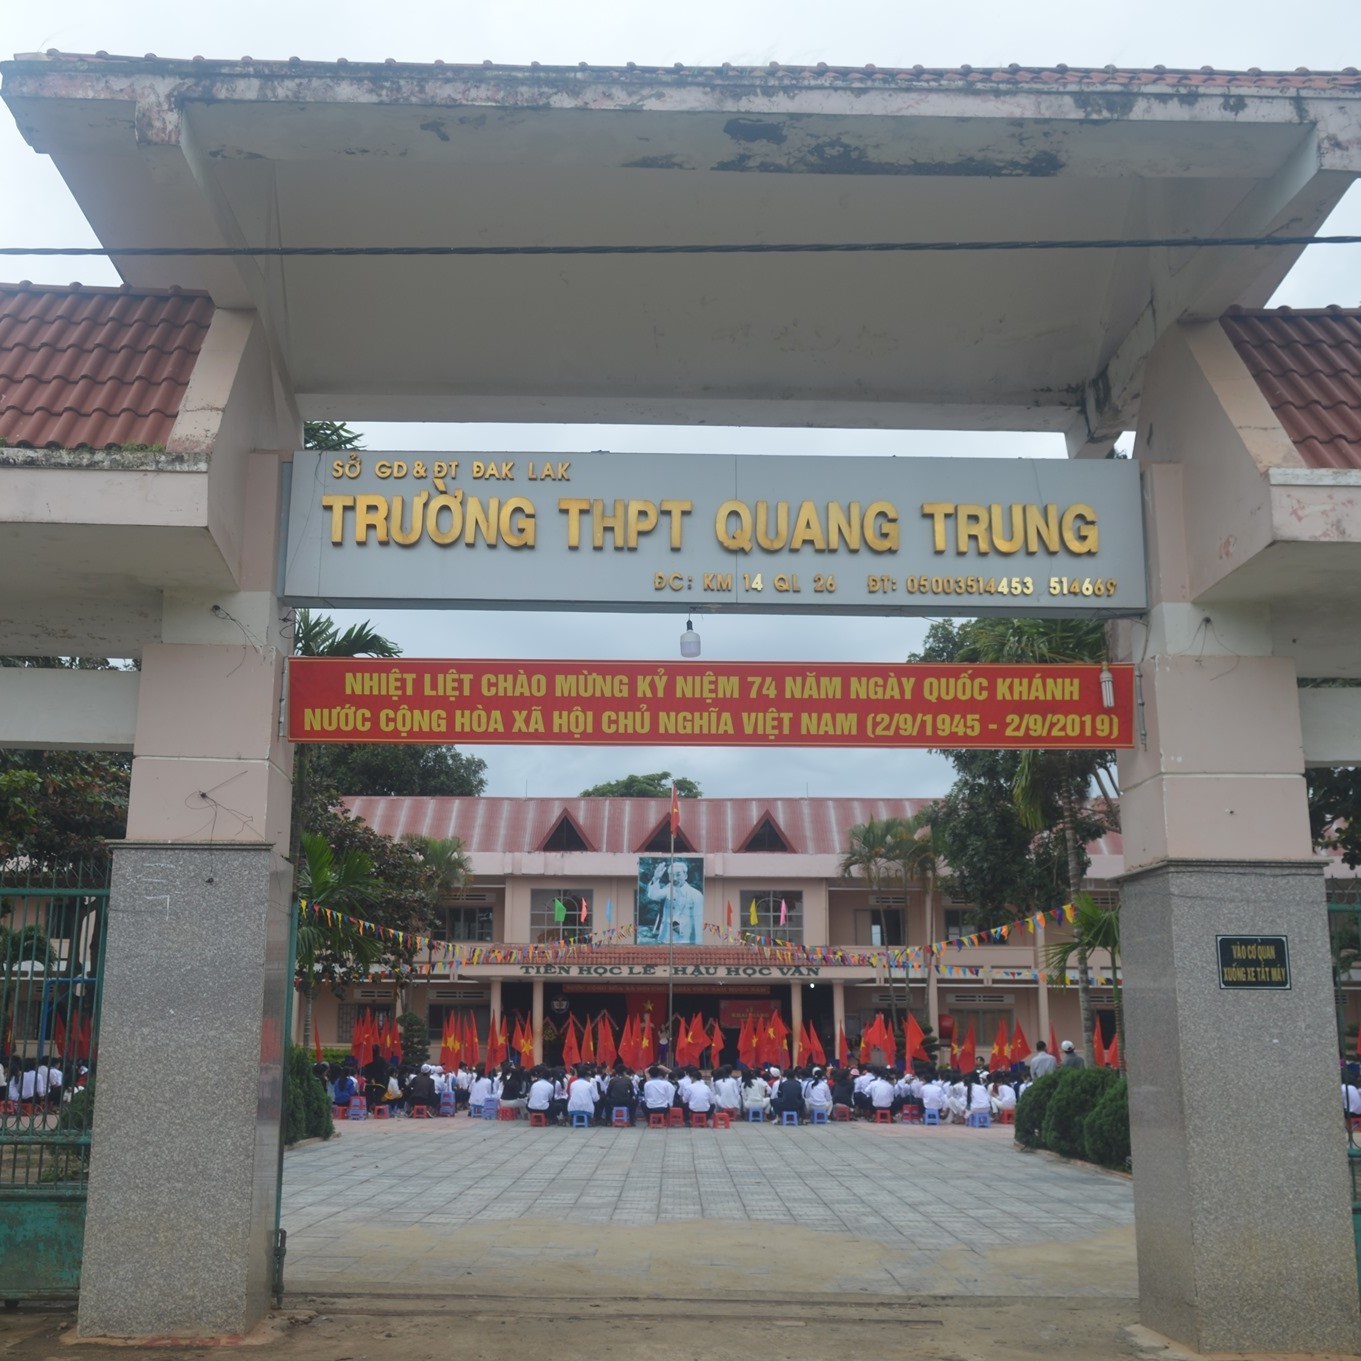  Đánh Giá Trường THPT Quang Trung Tỉnh Đắk Lắk Có Tốt Không